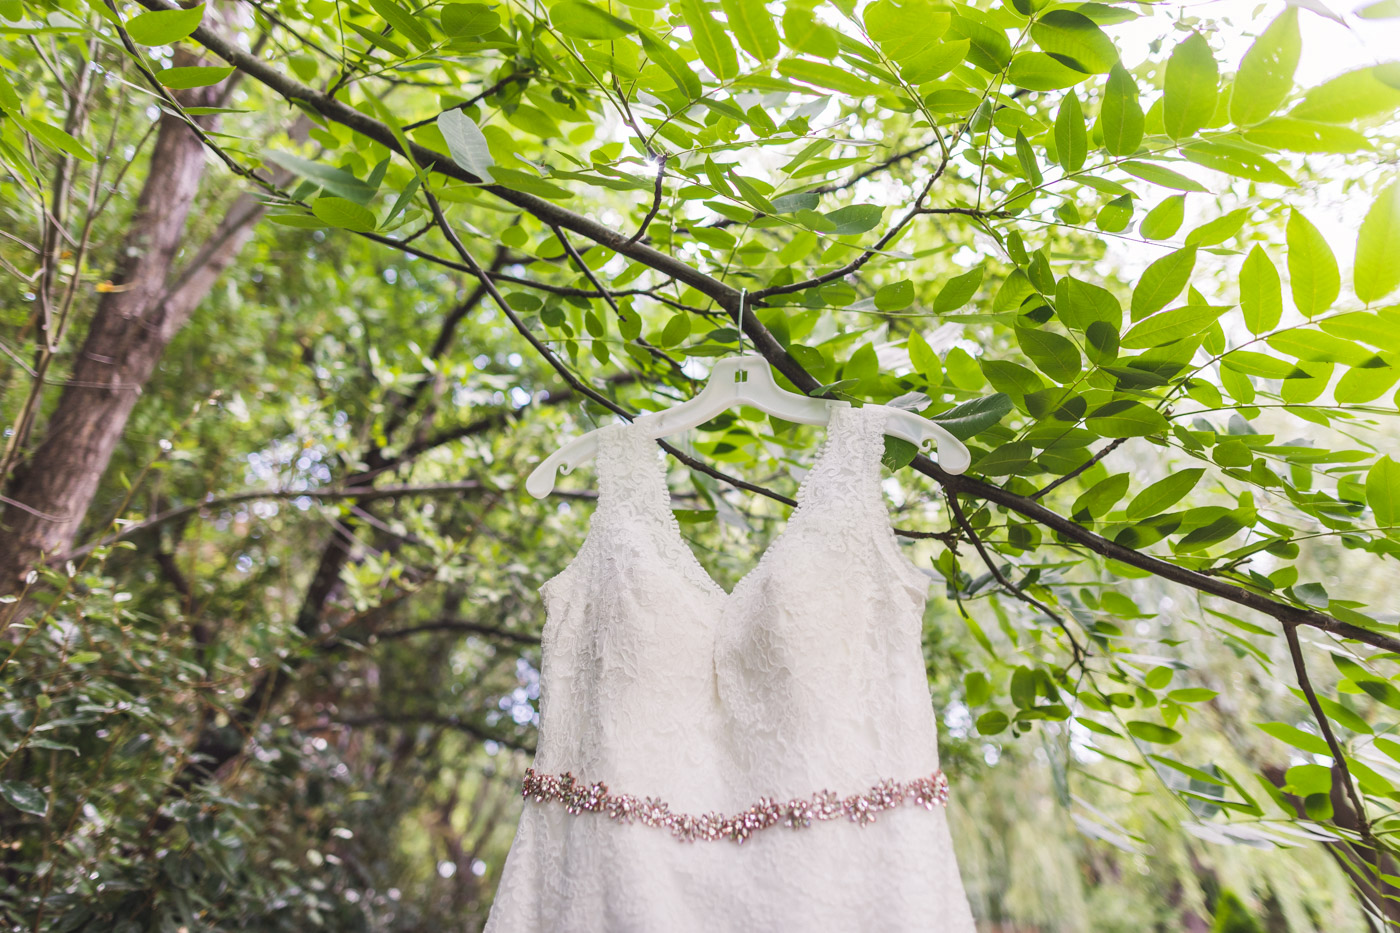 az-wedding-dress-in-tree